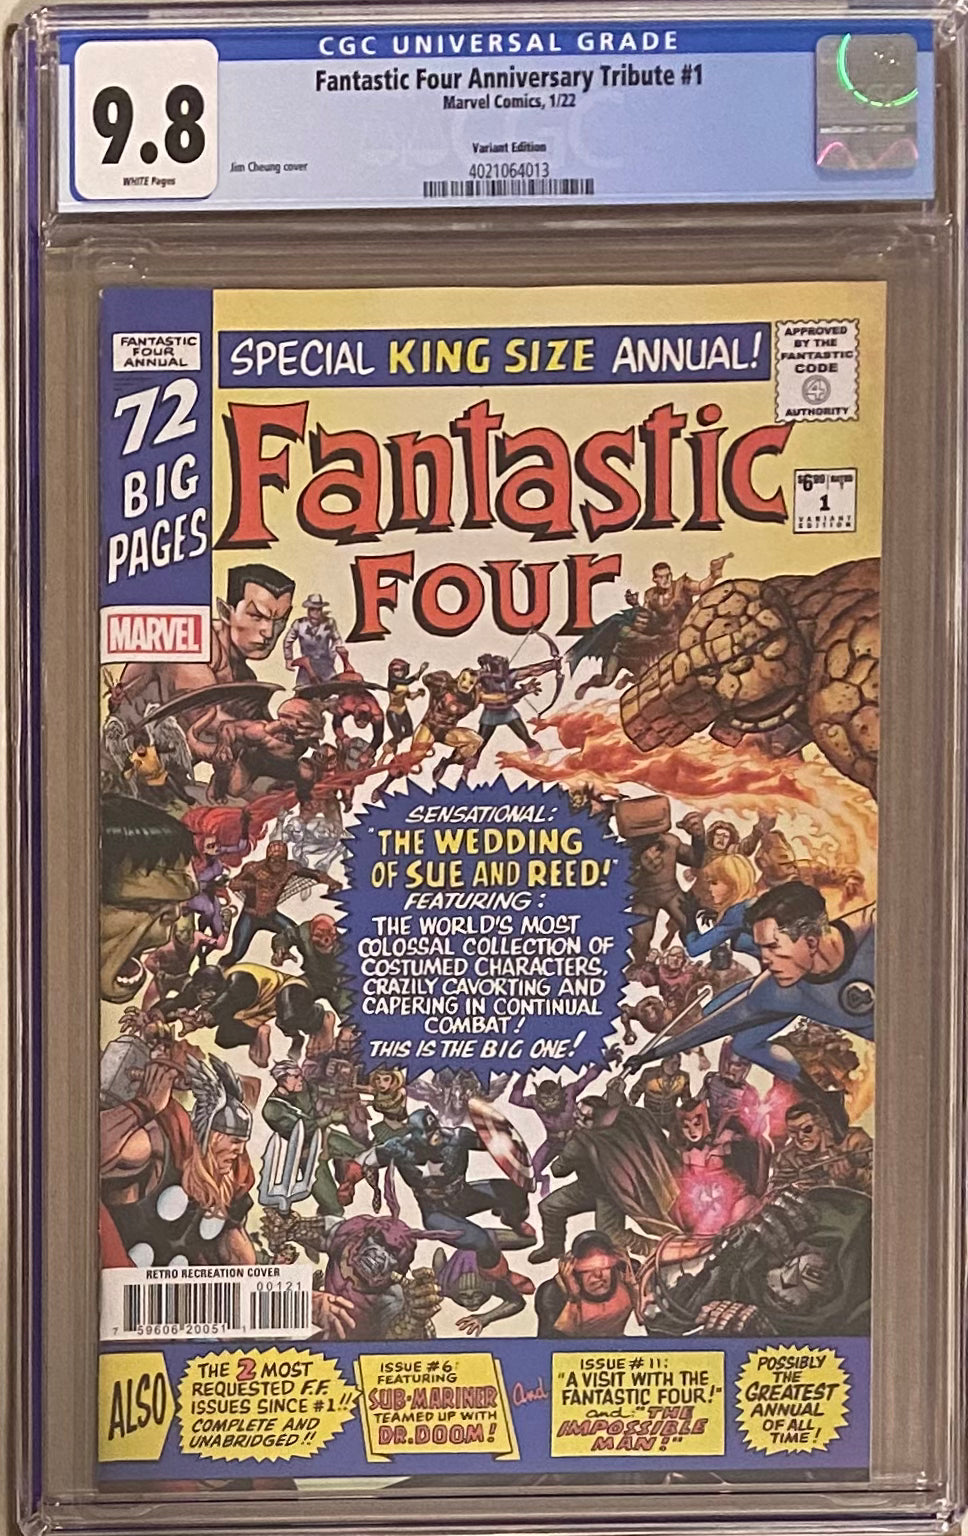 Fantastic Four Anniversary Tribute #1 Variant CGC 9.8